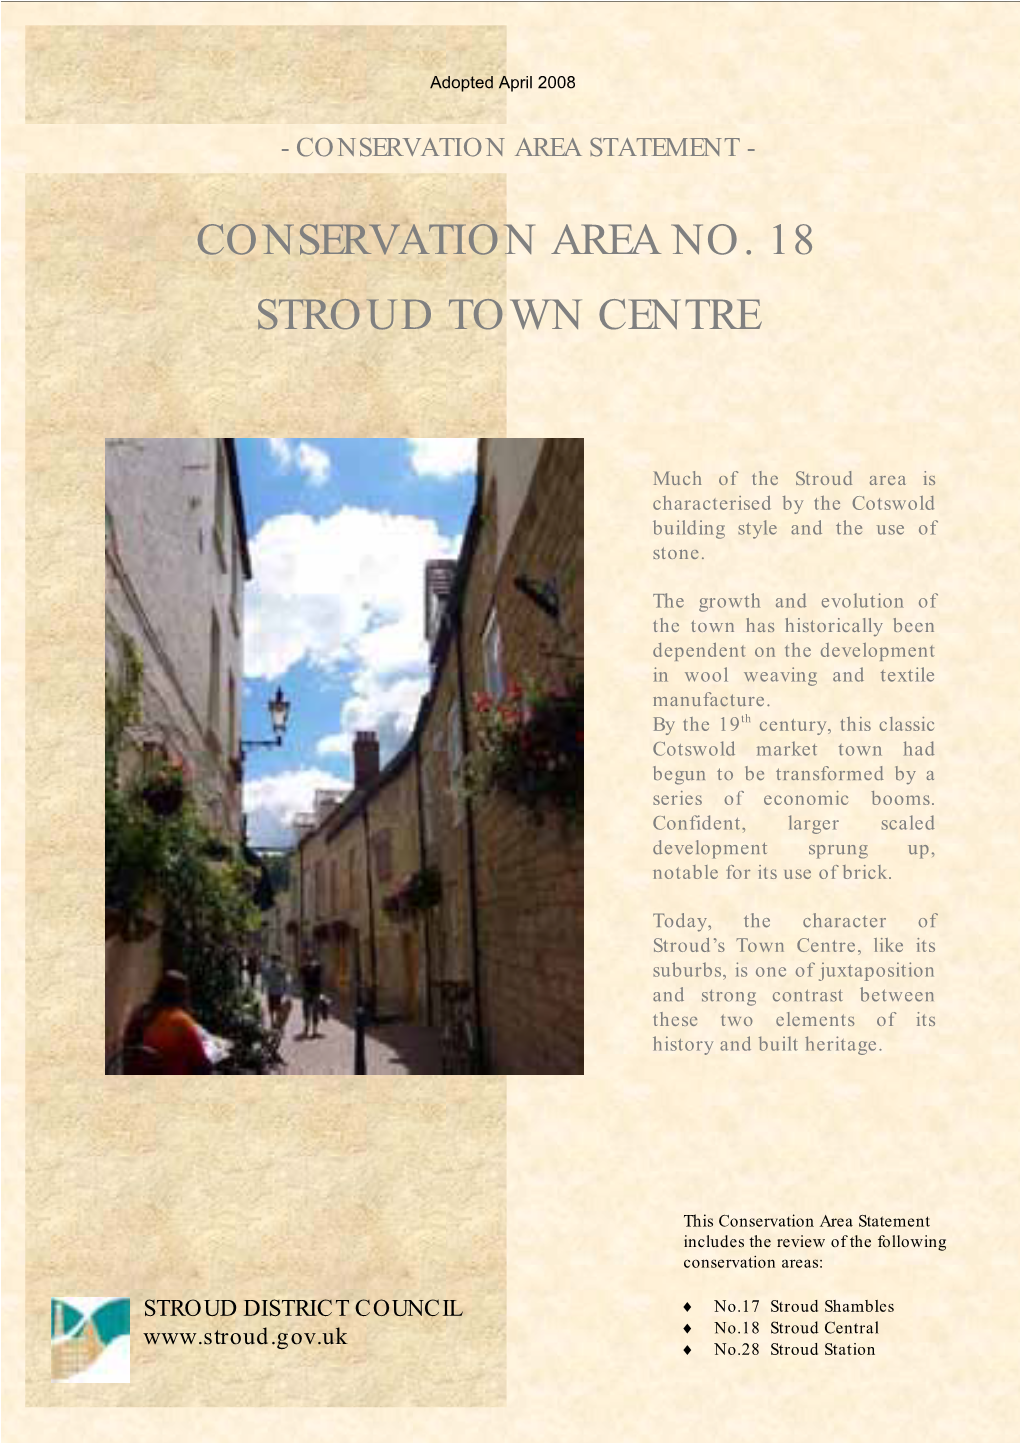 Conservation Area No. 18 Stroud Town Centre